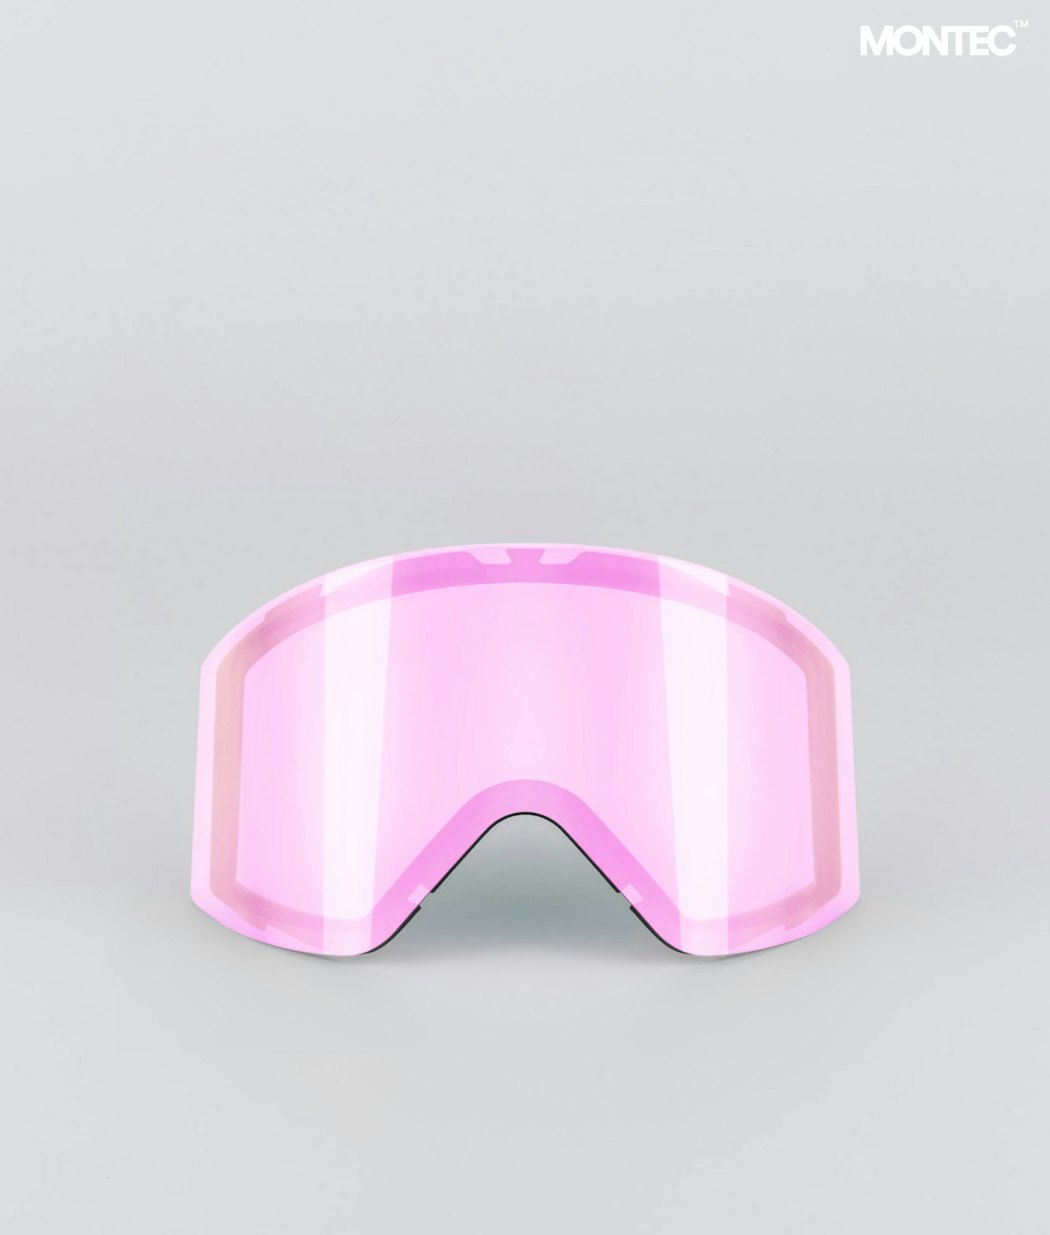 Montec Scope 2020 Goggle Lens Large Ecran de remplacement pour masque de ski Homme Pink Sapphire